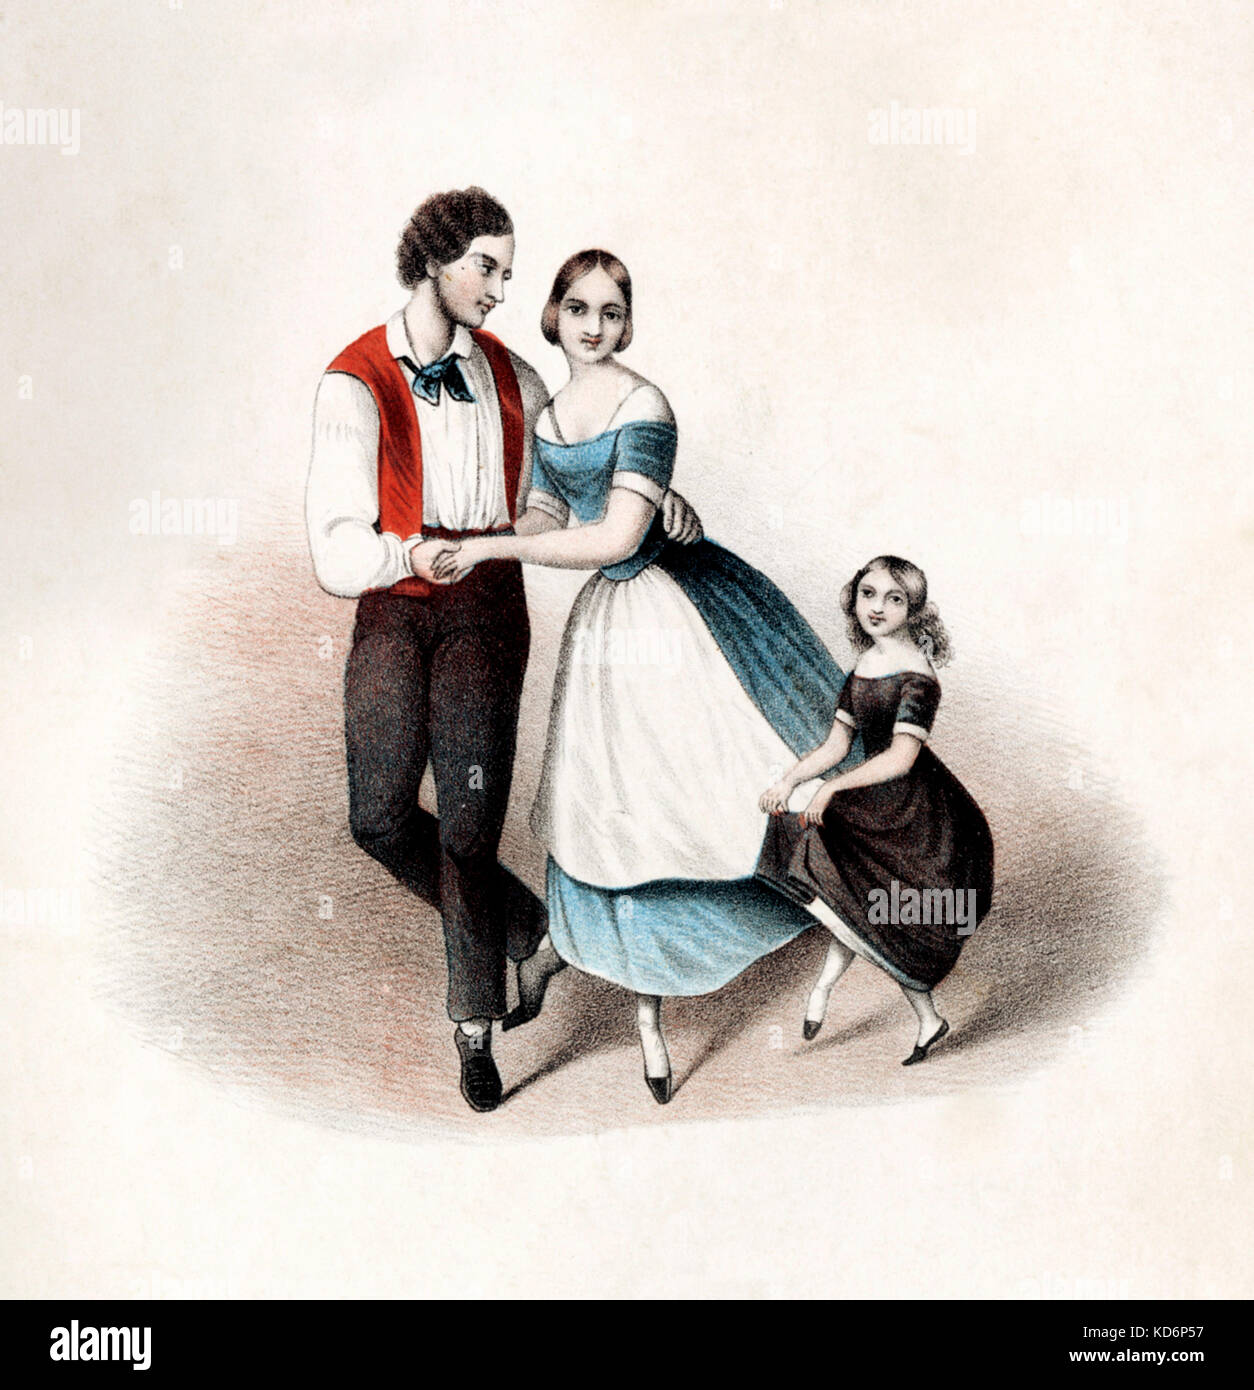 Polka-Score Abdeckung für '3 Polkas - Camelia, Alpenhorn und Teufels, Polka. Für Klavier von F. Beyer Opus 51. Abbildung zeigt Tanzschritte. Mutter, Vater, Tochter alle tanzen. Veröffentlicht Mainz, B Schott, 1850-56 Stockfoto